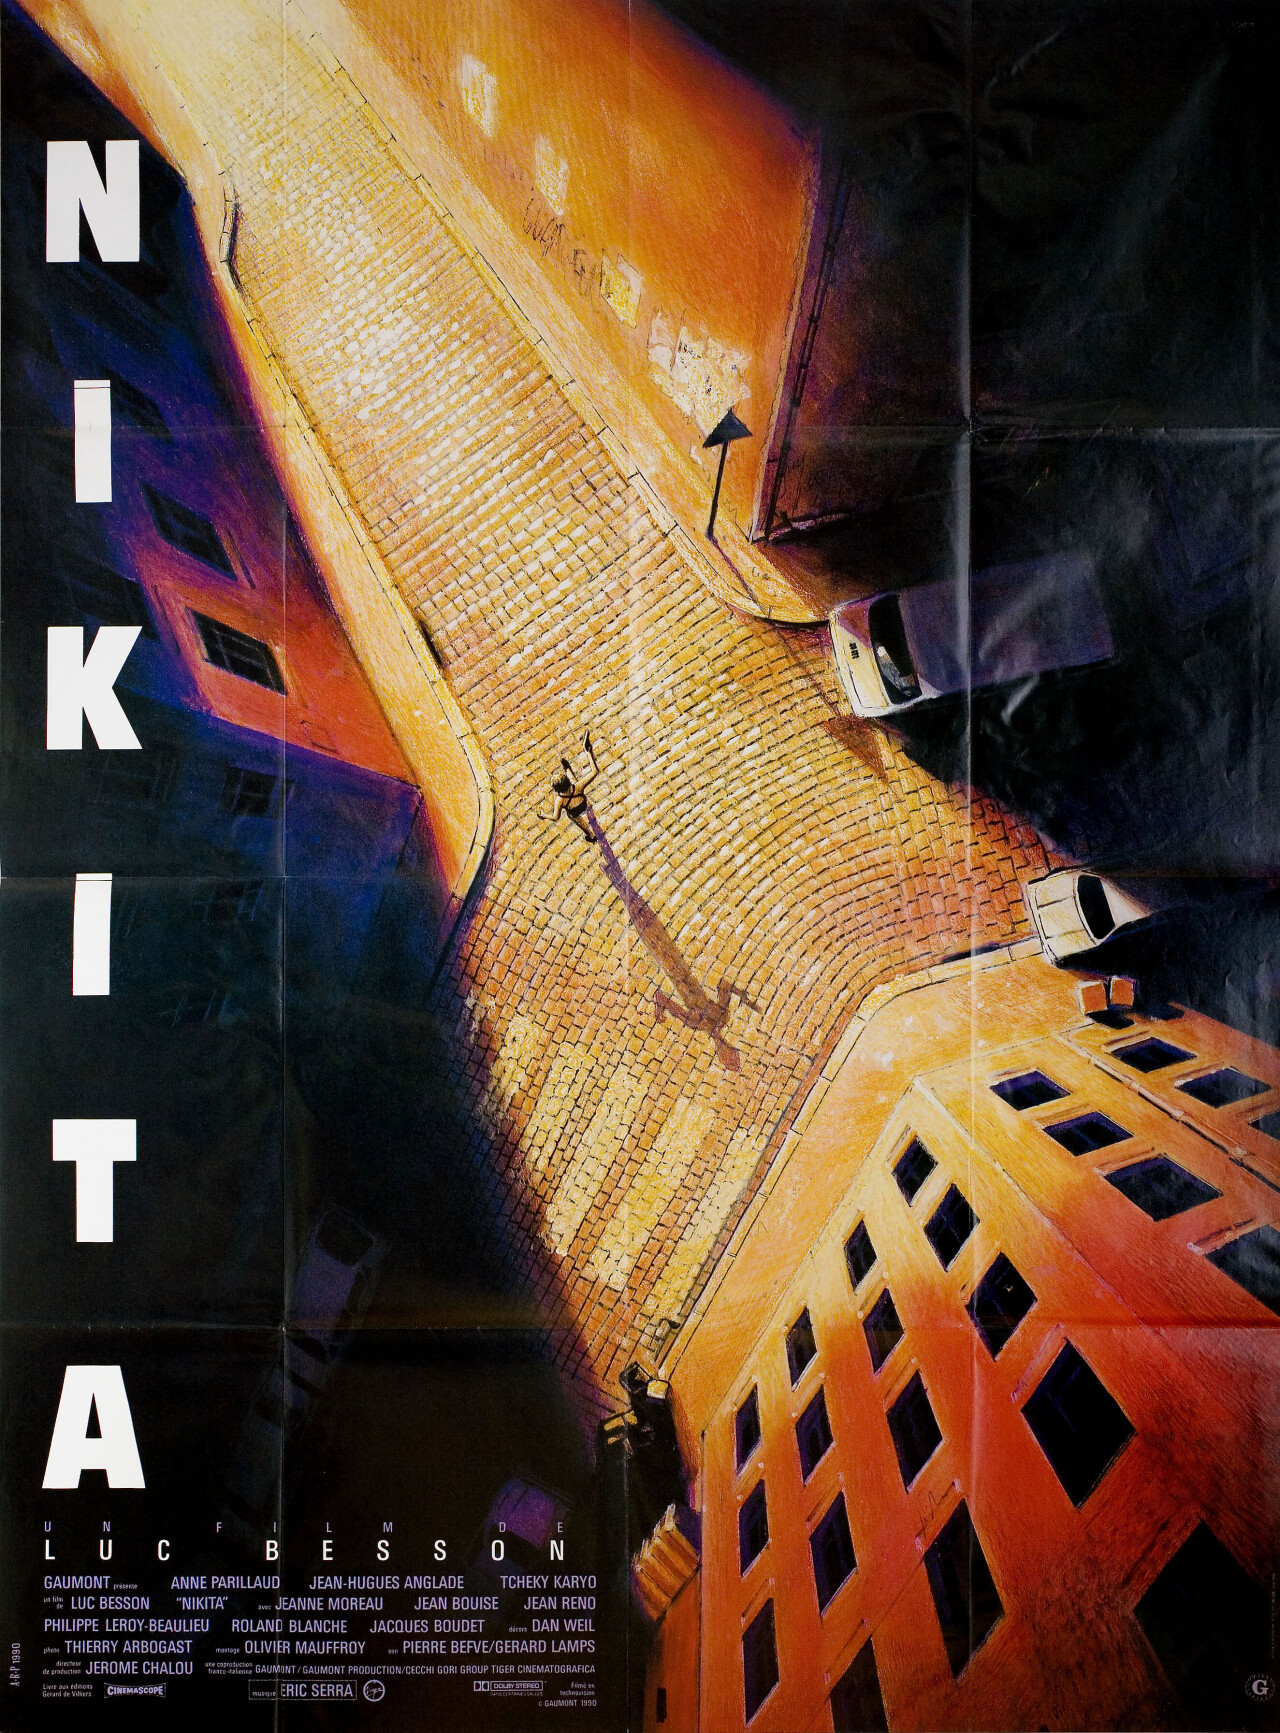 Никита (La Femme Nikita, 1990), режиссёр Люк Бессон, французский постер к фильму (графический дизайн, 1990 год)